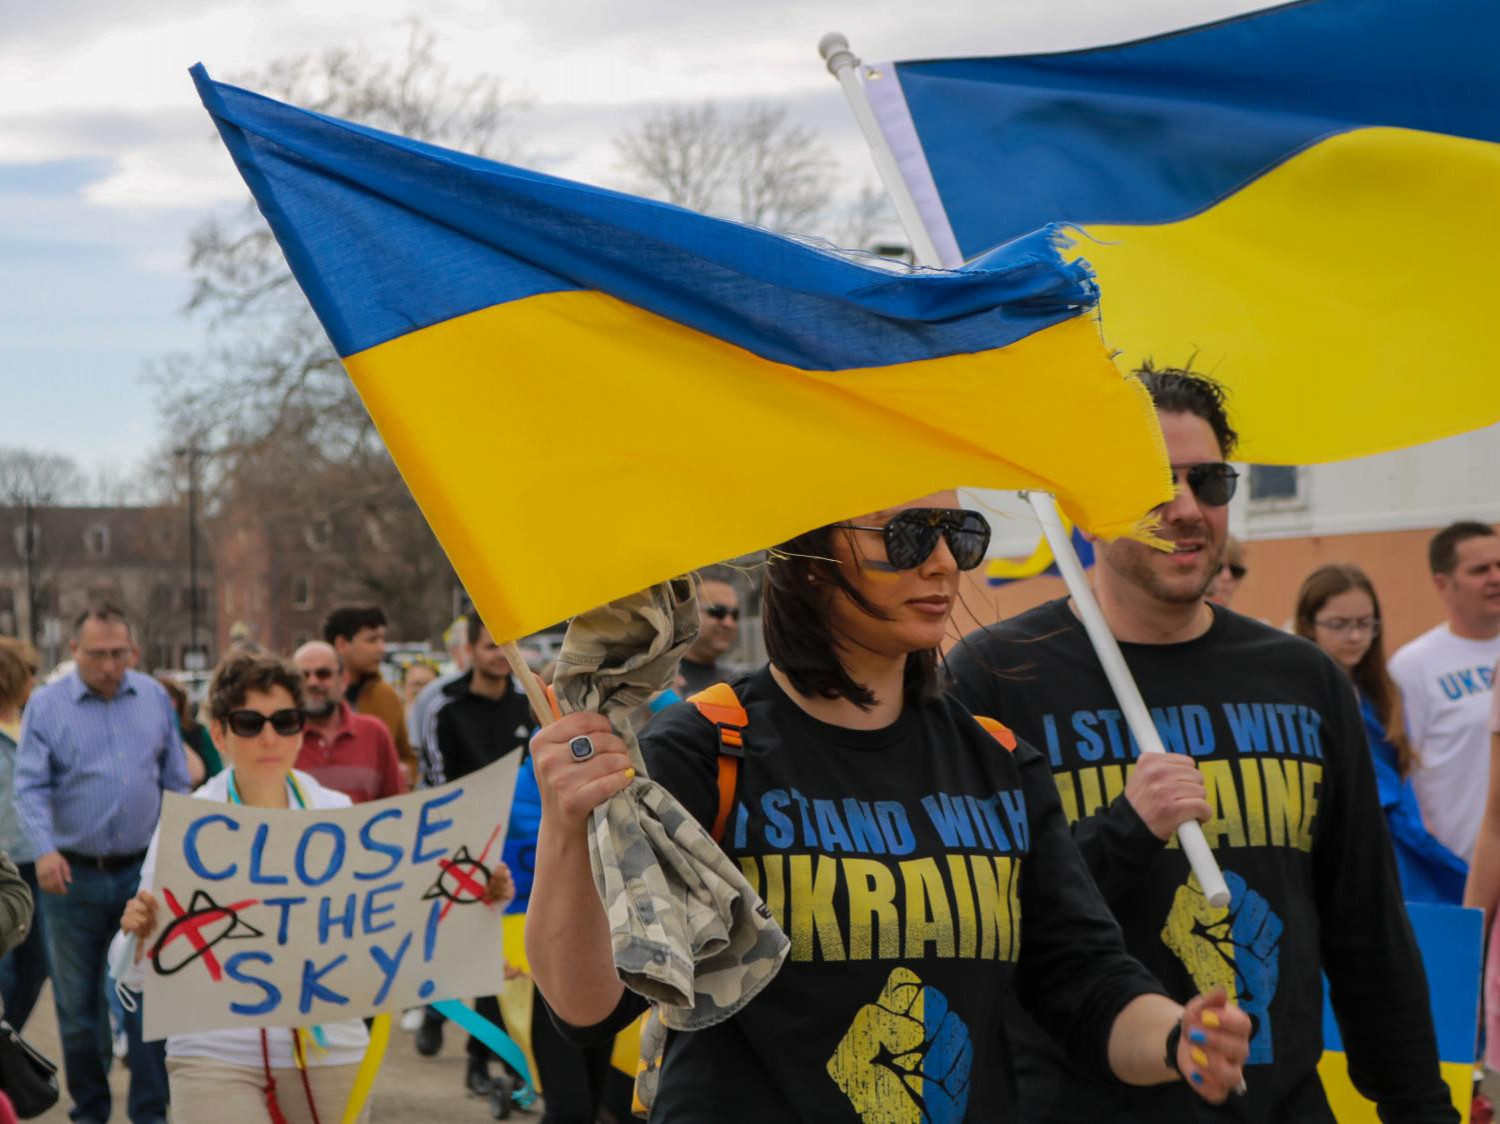 Cuộc chiến vệ quốc anh dũng của nhân dân Ukraine đáng được thế giới khâm phục và ủng hộ - Ảnh: chsglobe.com